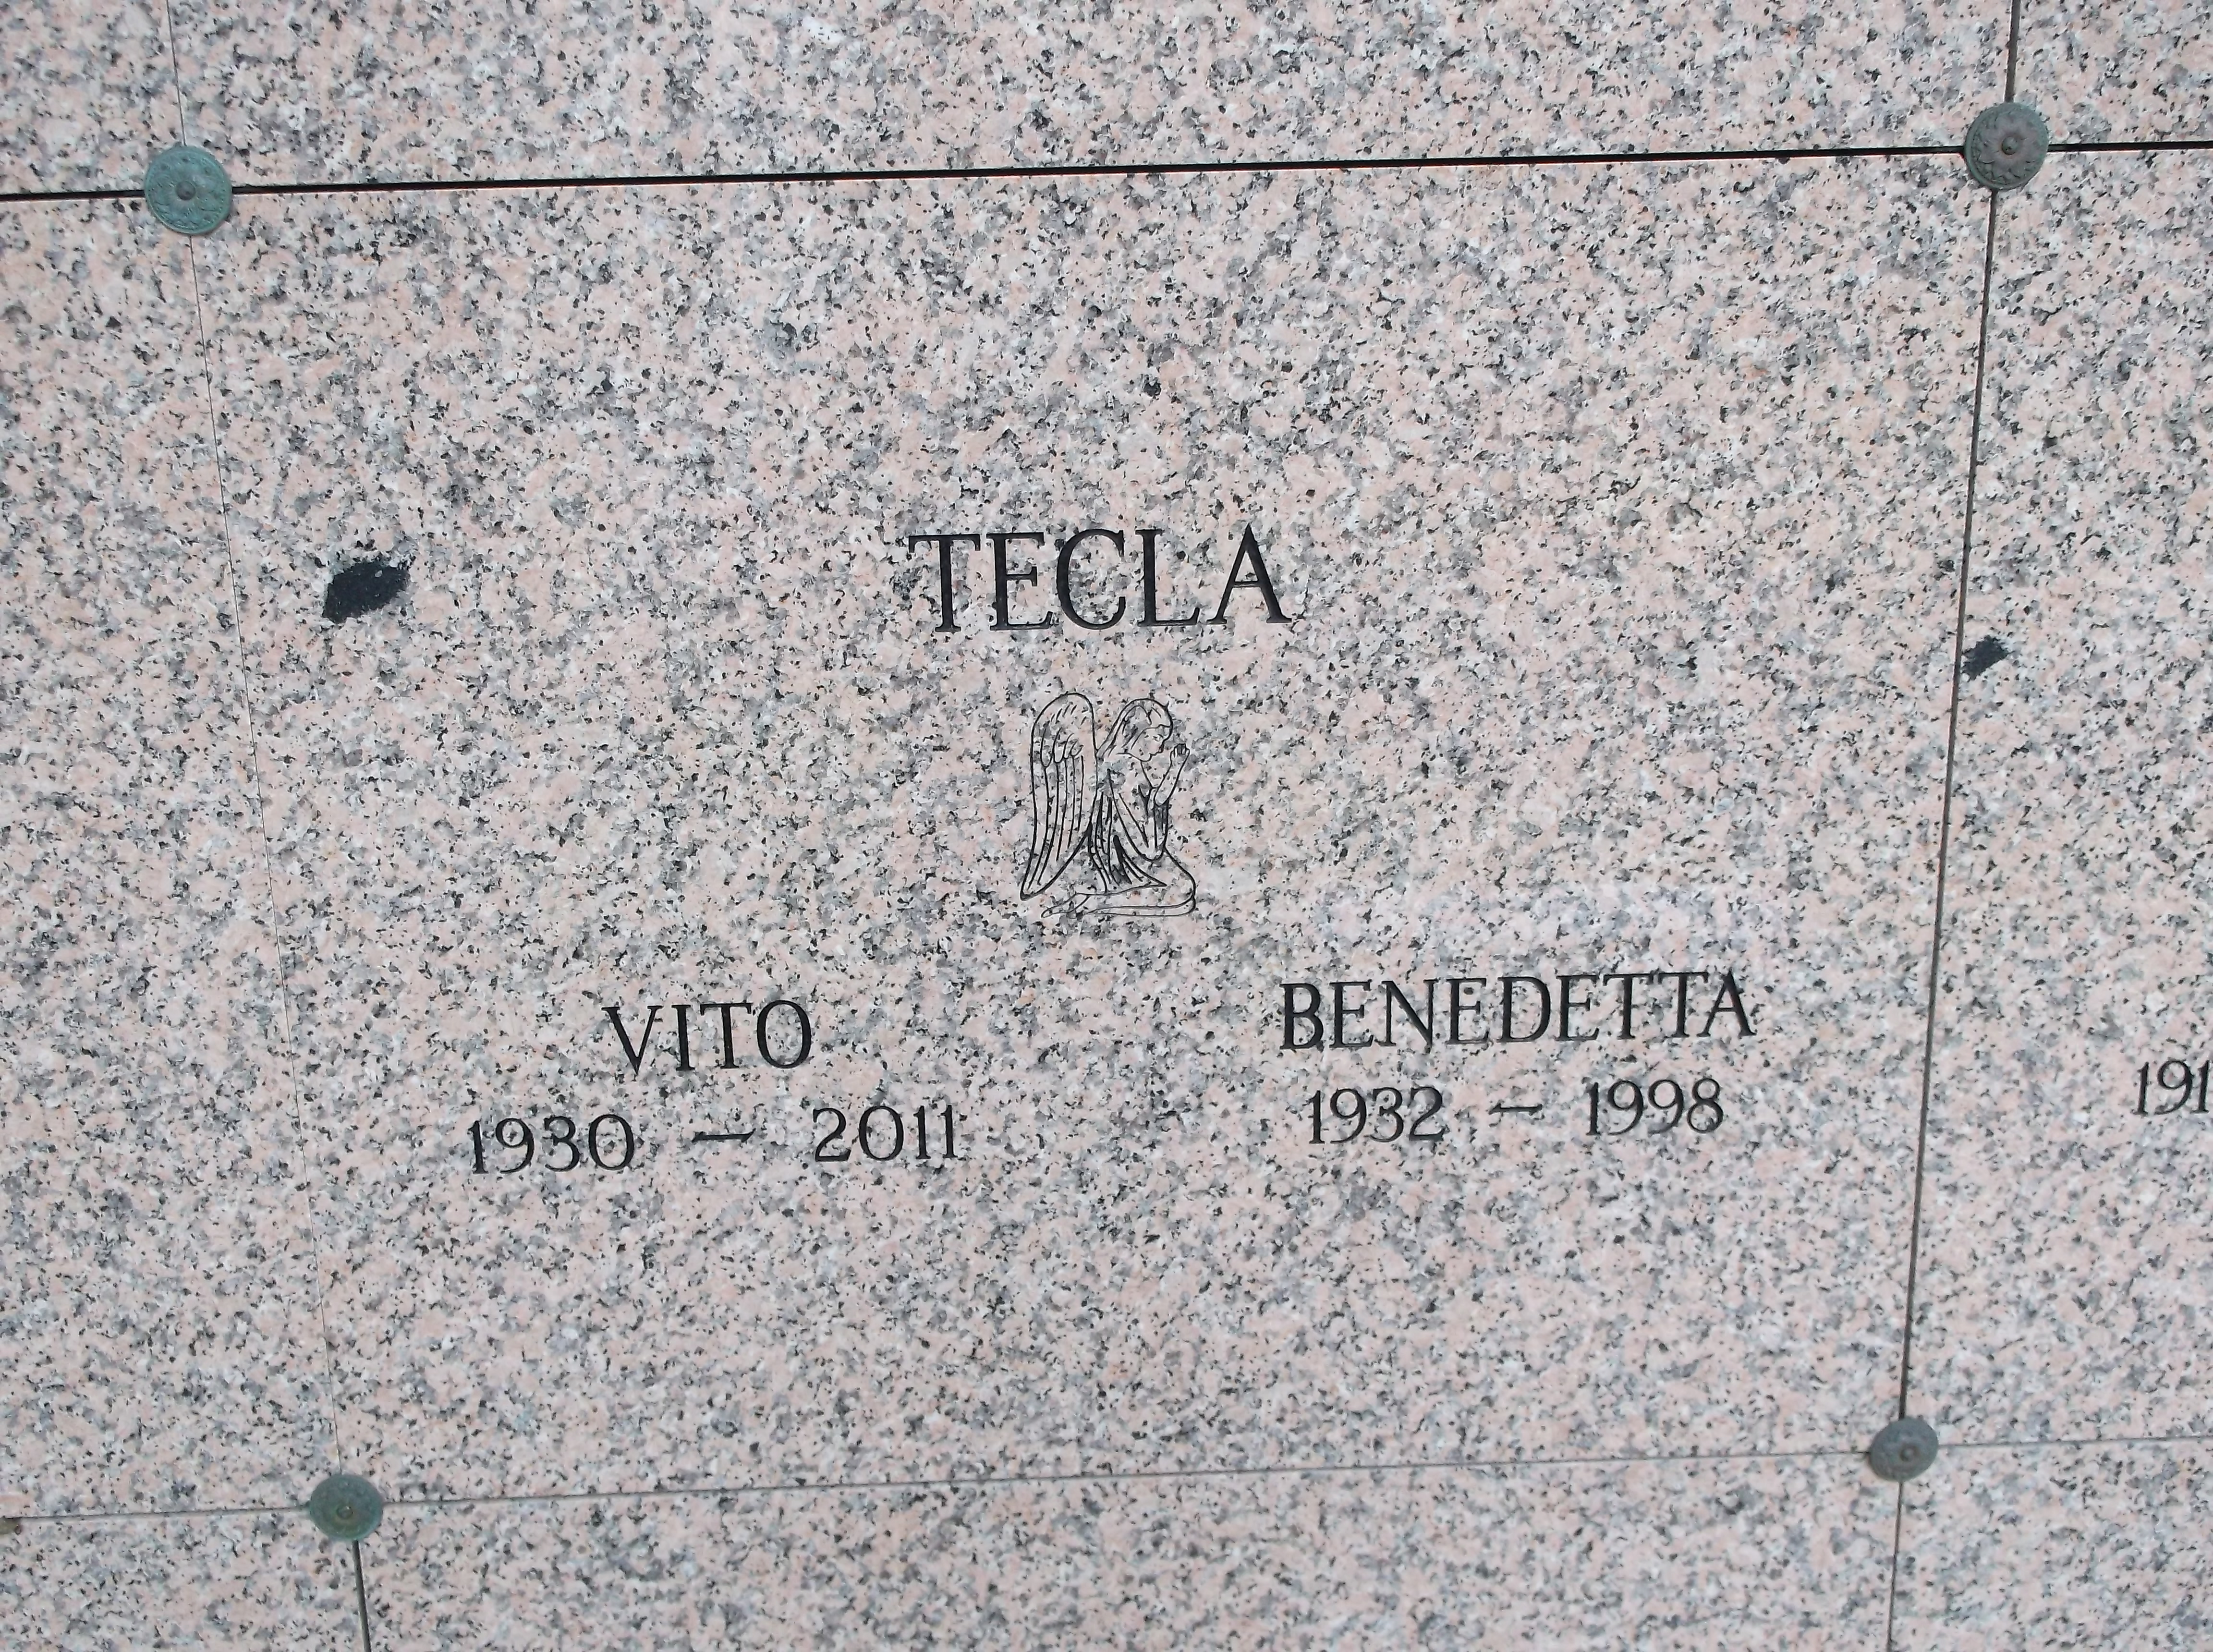 Benedetta Tecla